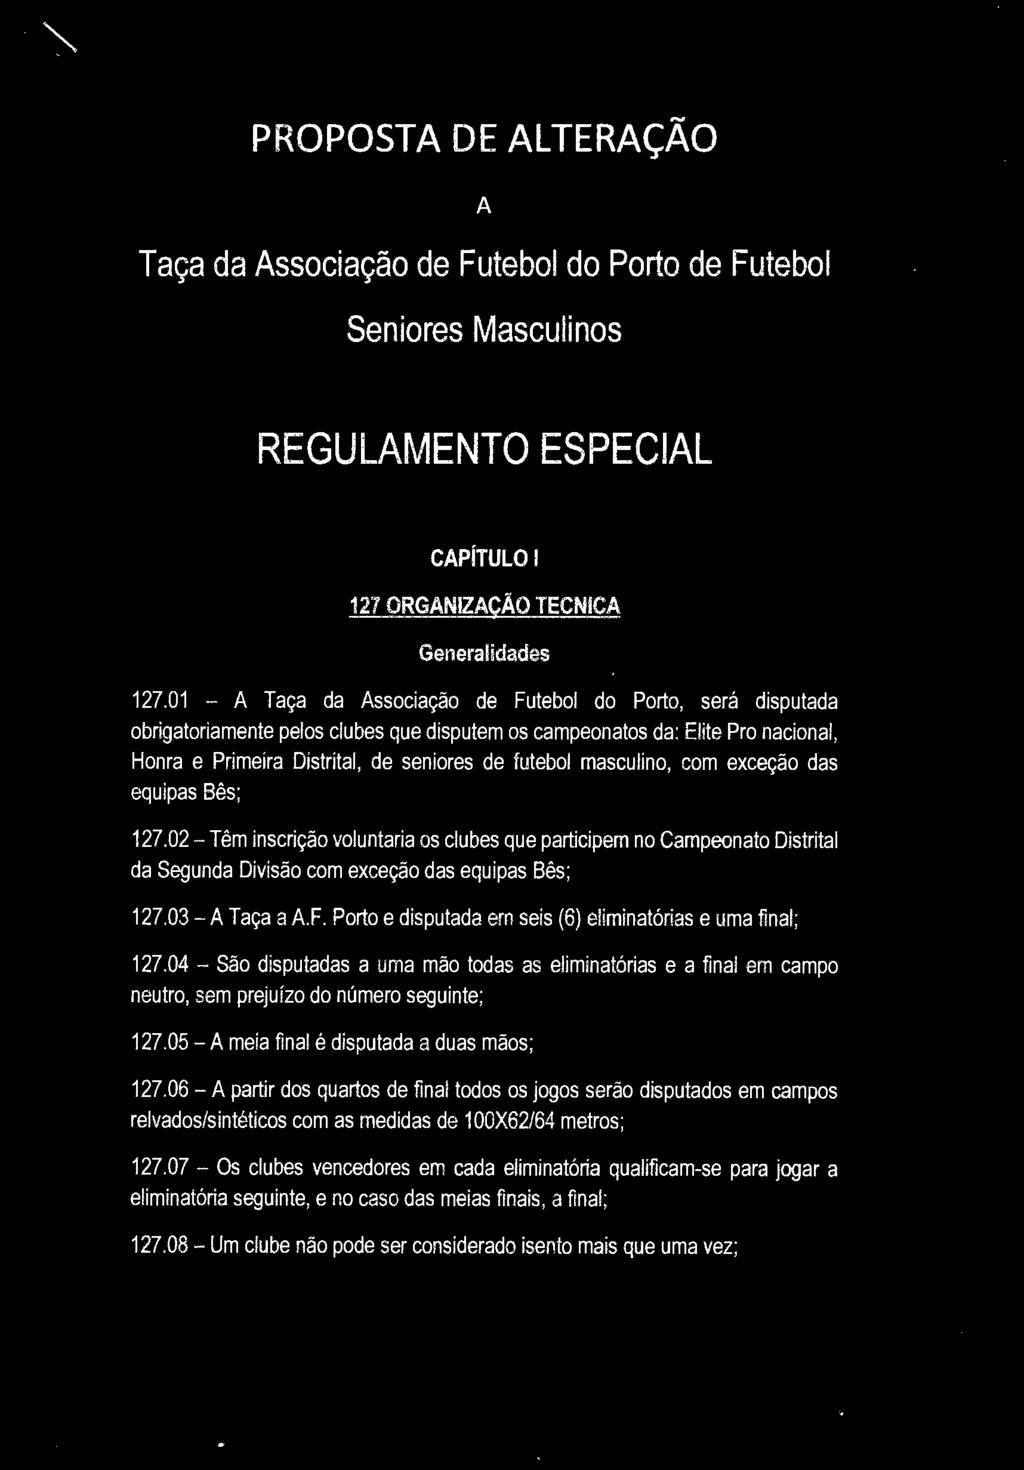 PROPOSTA DE ALTERAÇÃO A Taça da Associação de Futebol do Porto de Futebol Seniores Masculinos REGULAMENTO ESPECIAL CAPÍTULO 1 127 ORGANIZAÇÃO TECNICA Generalidades 127.